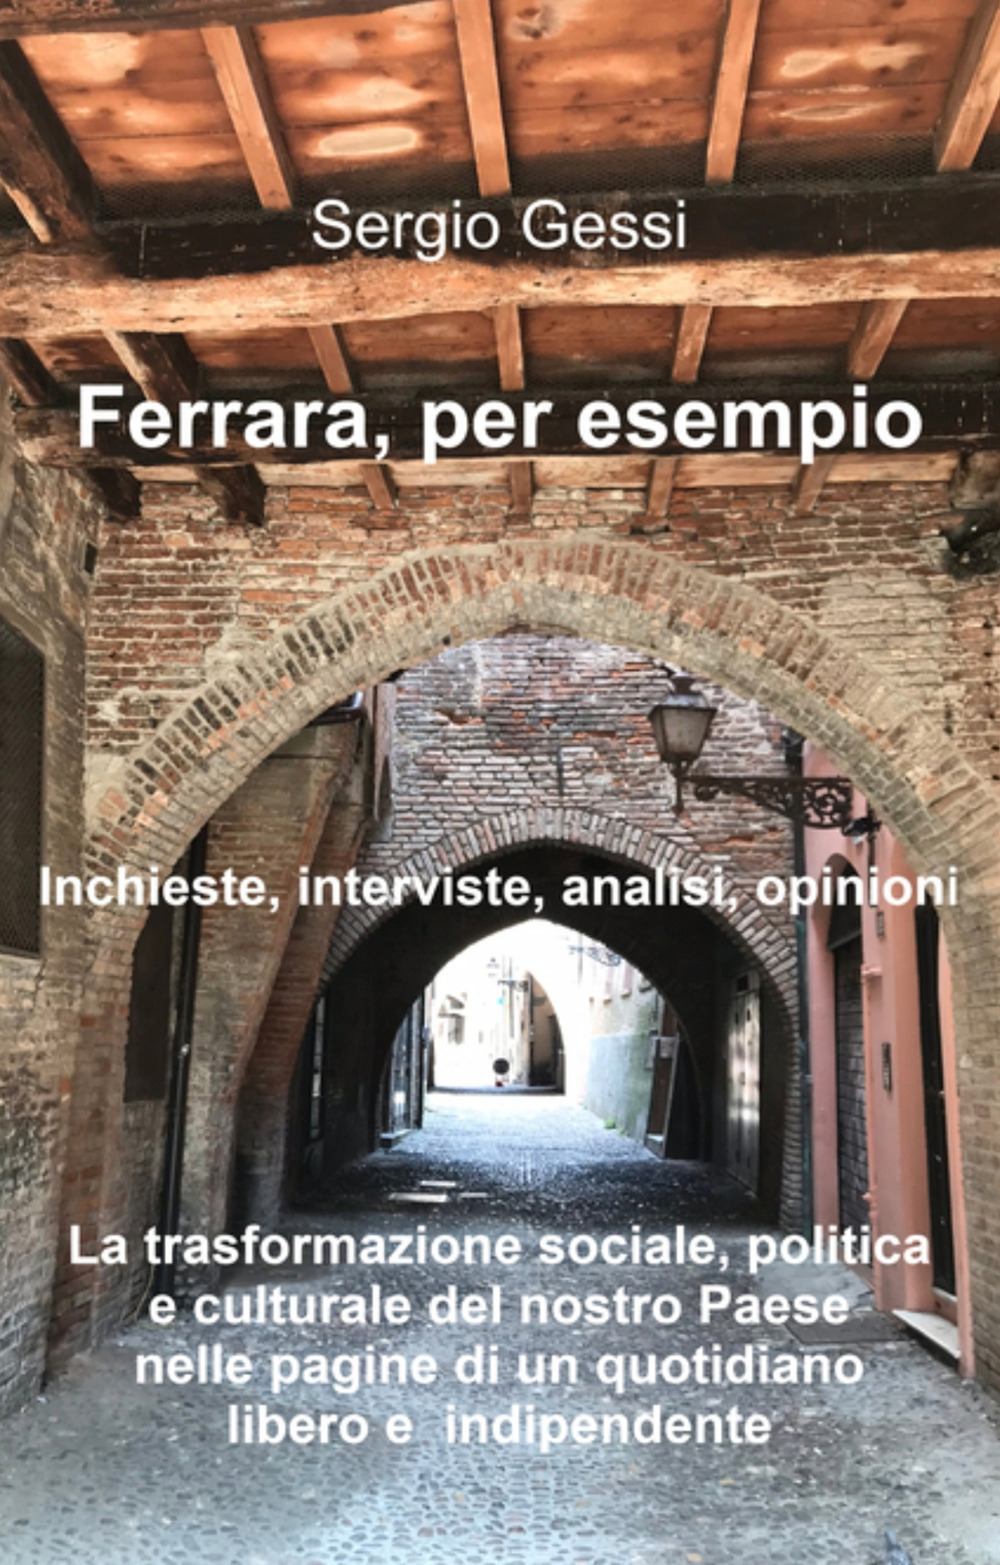 Ferrara, per esempio. La trasformazione sociale, politica e culturale del nostro paese nelle pagine di un quotidiano libero e indipendente